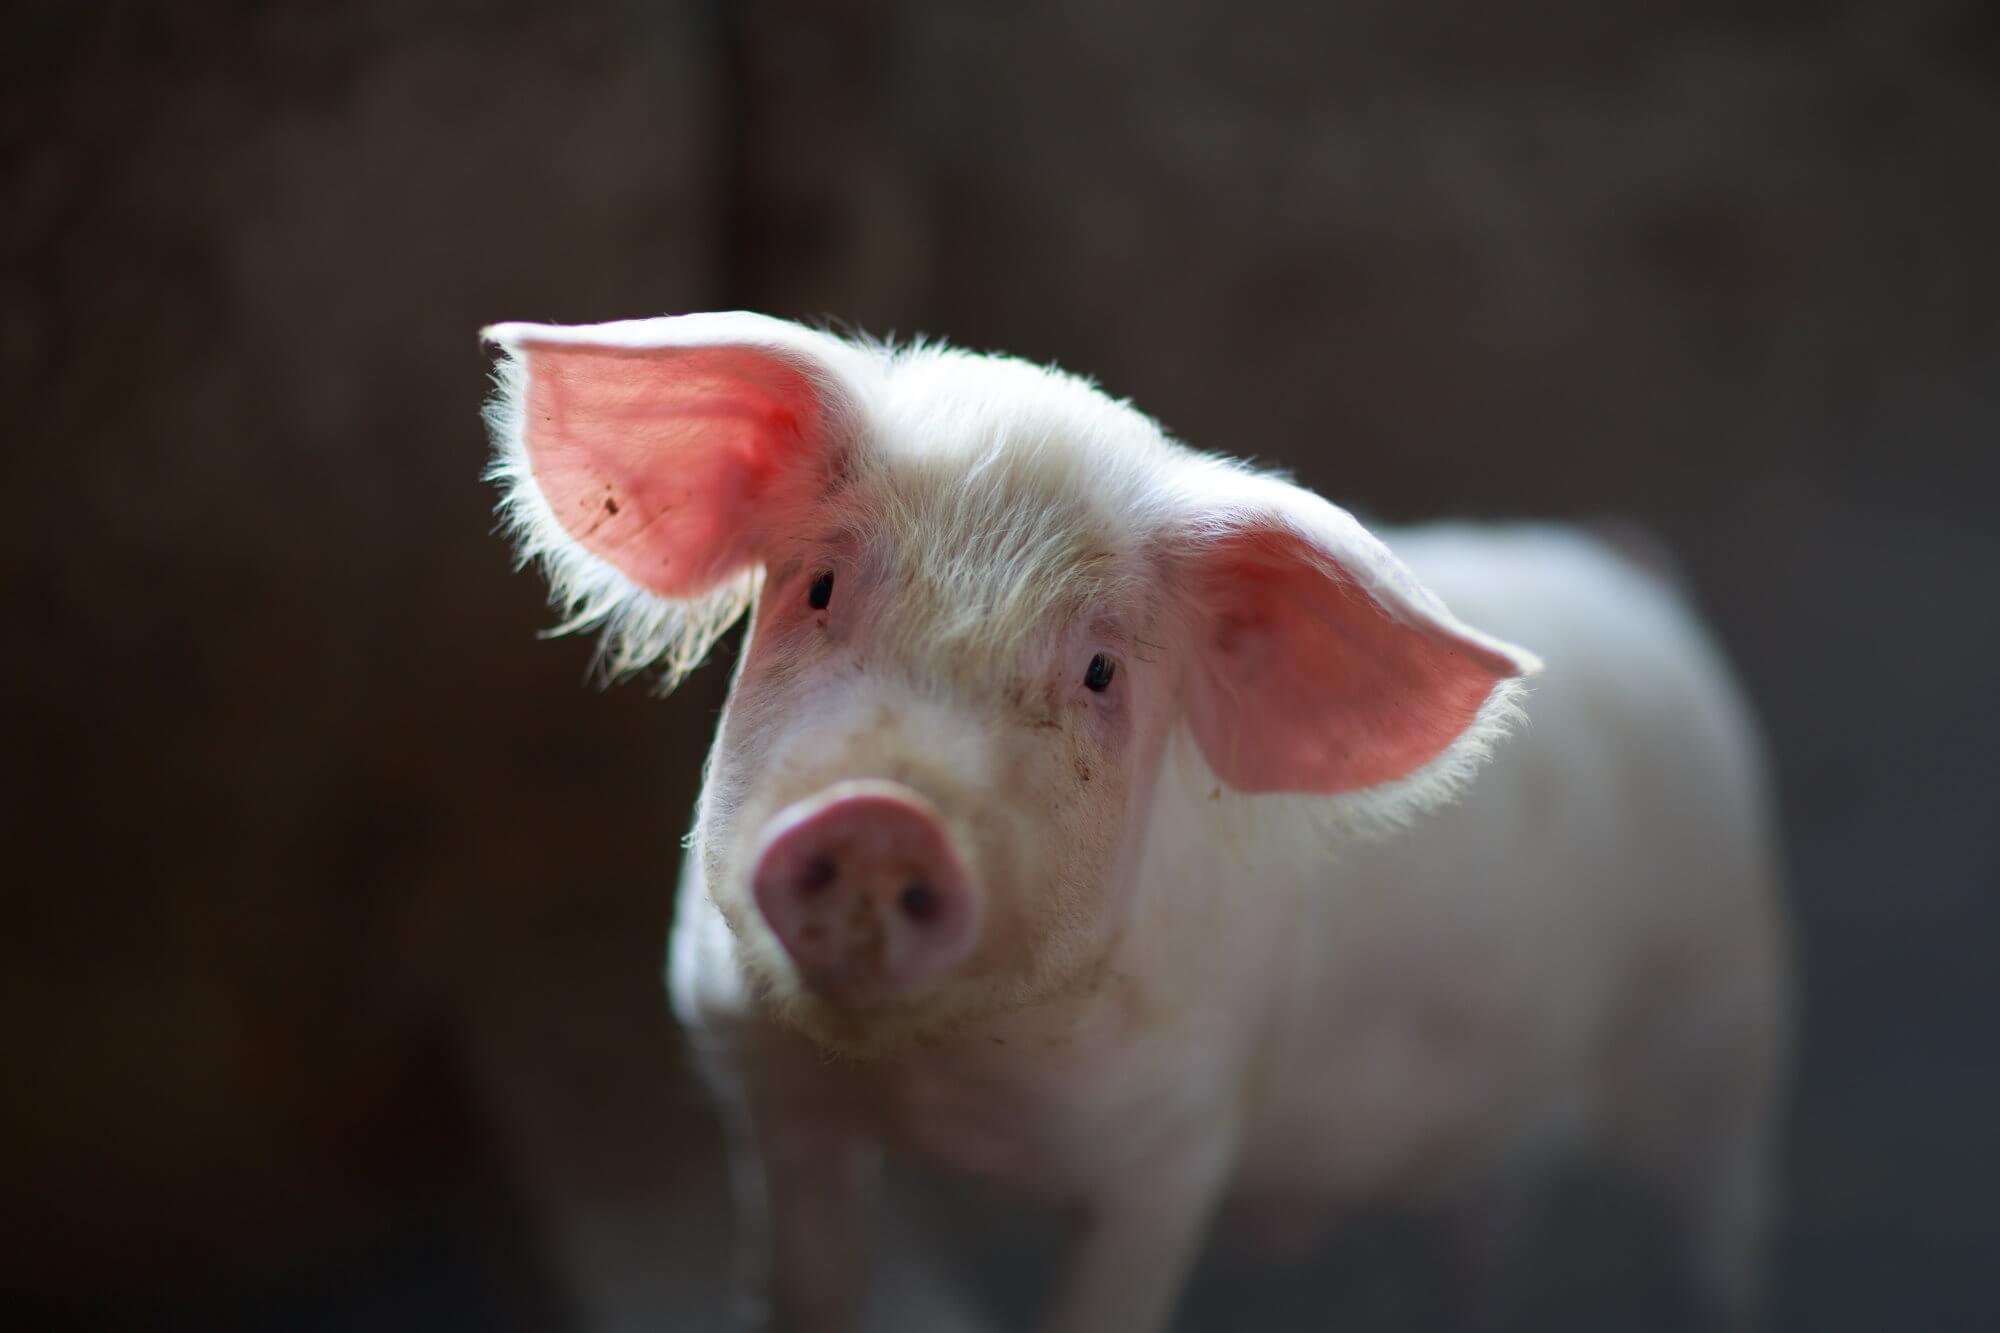 الخنزير للمرة الأولى ساعد على شفاء الحروق الشديدة من الرجل